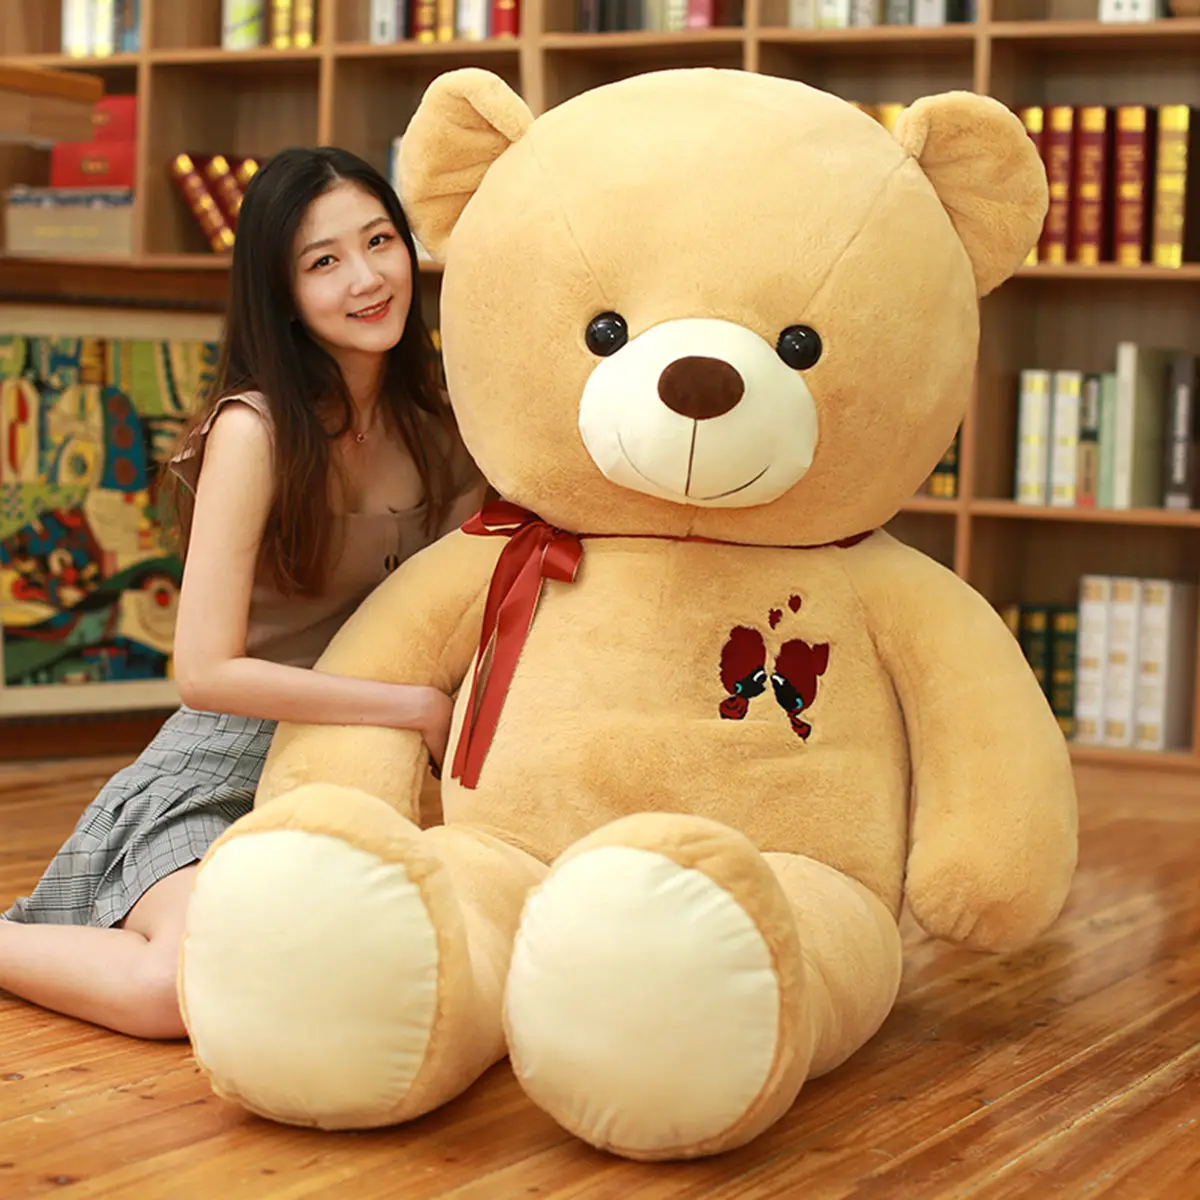 Large Teddy Bear